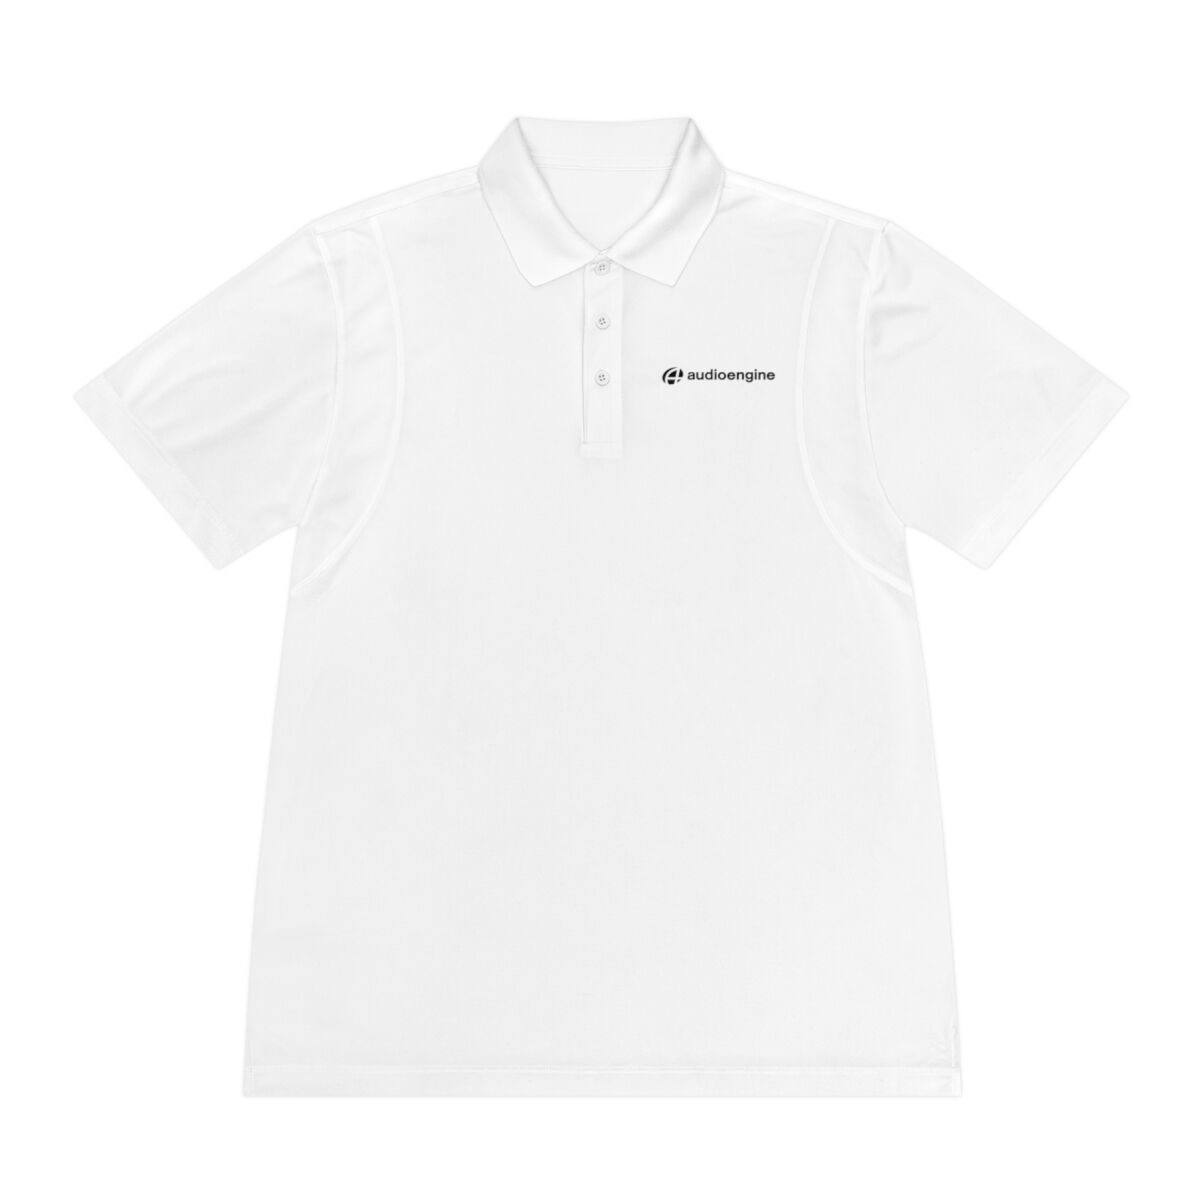 Audioengine Men's Sport Polo Shirt White 3XL